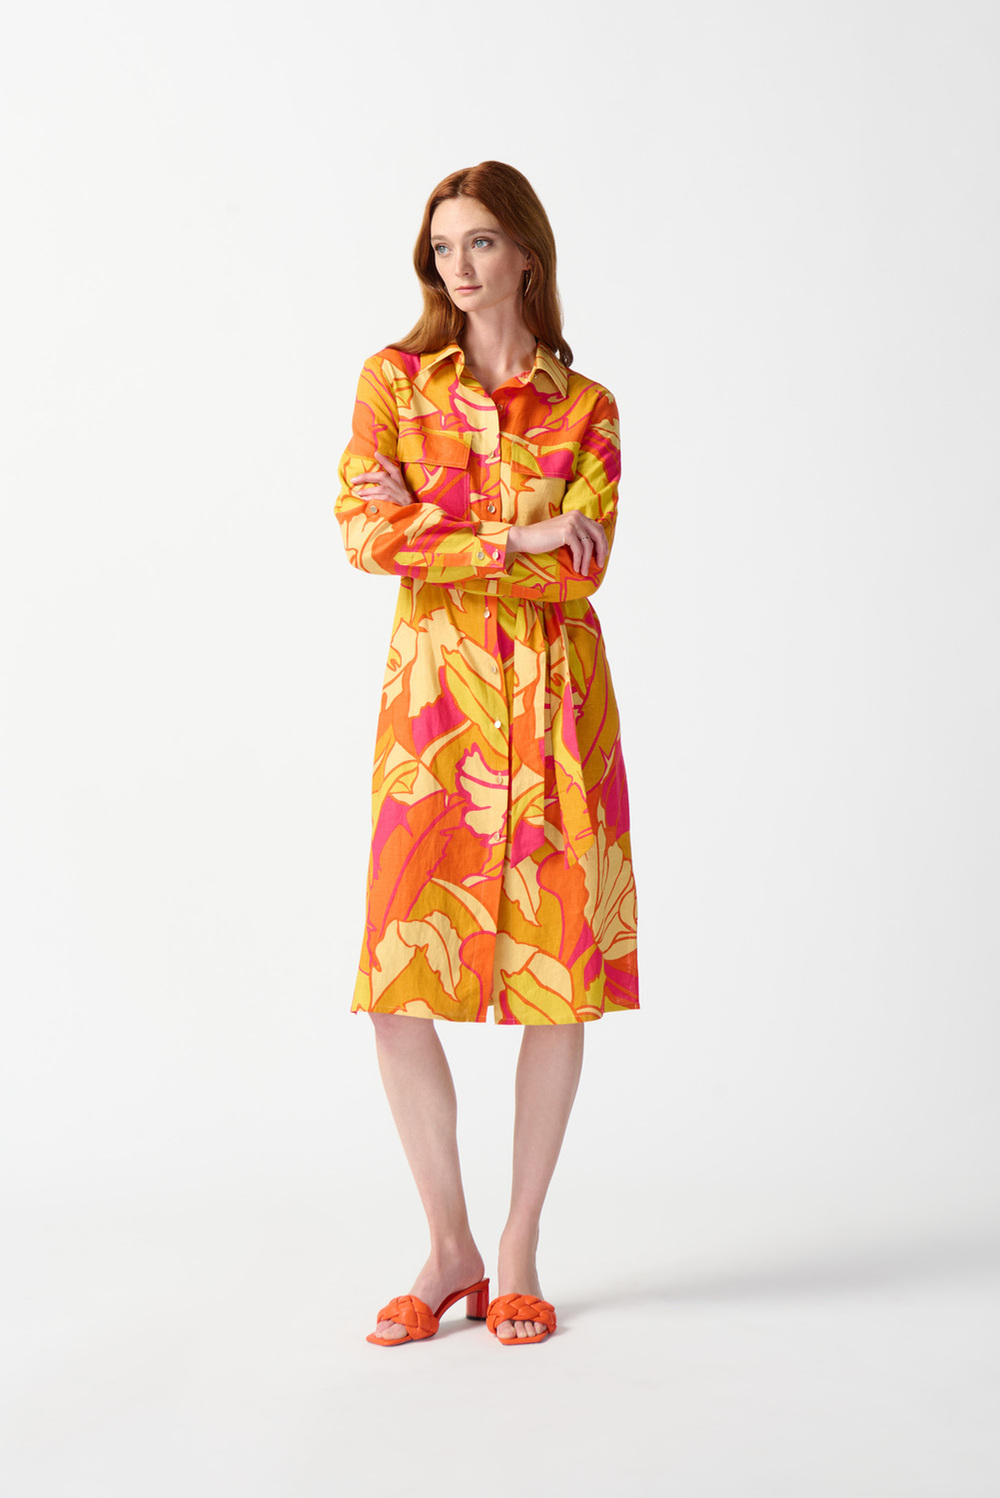 Robe chemise, feuilles colorées modèle 242912. Rose/multi